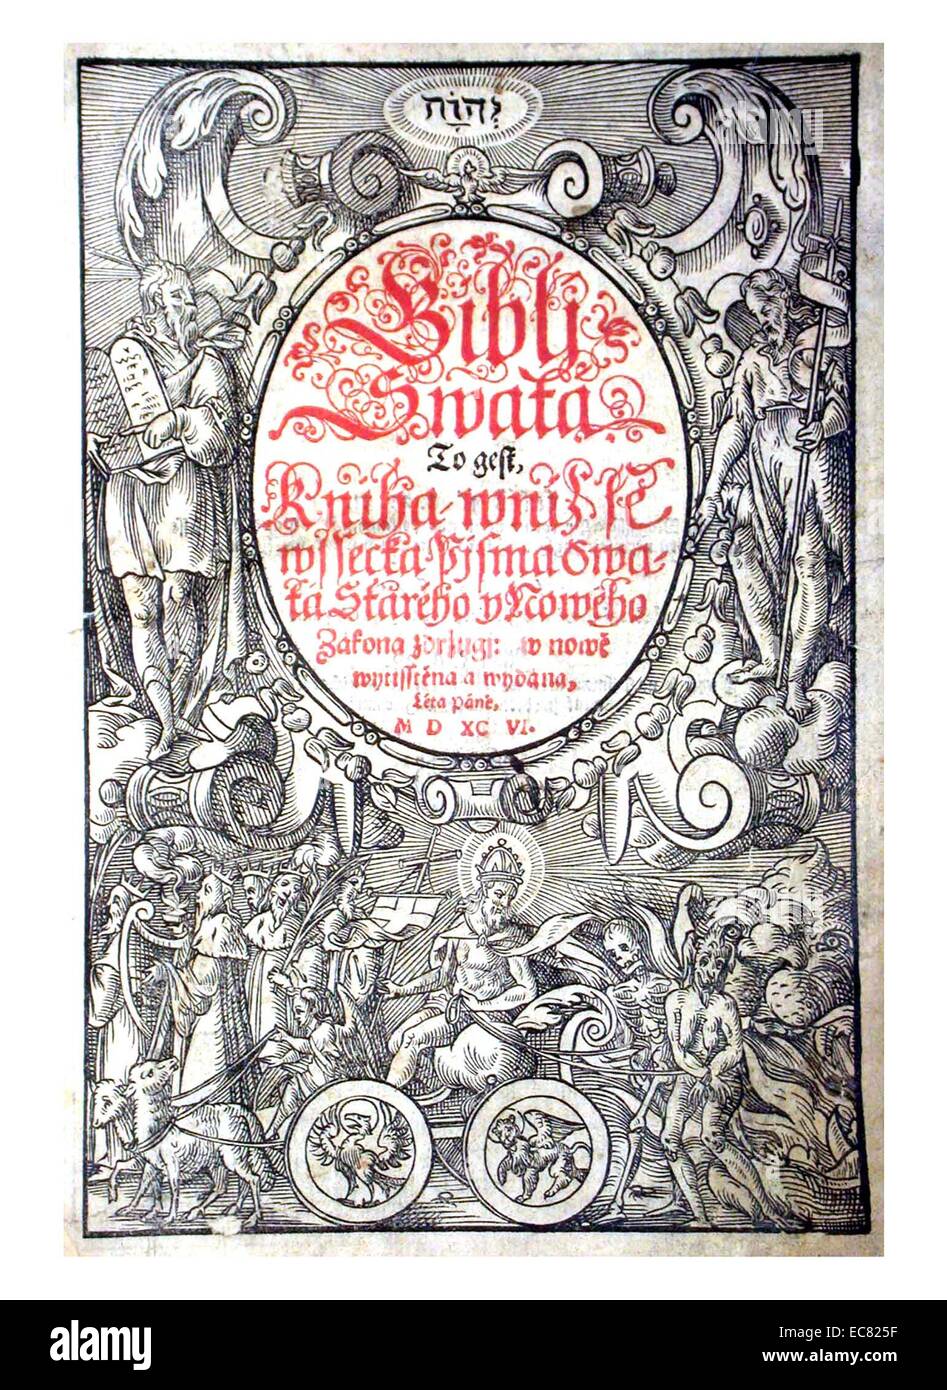 Couverture d'un Kralitz Bohemian bible, une édition de la Bible de Kralice, publié par Unitas Fratrum protestante. Datée 1596 Banque D'Images